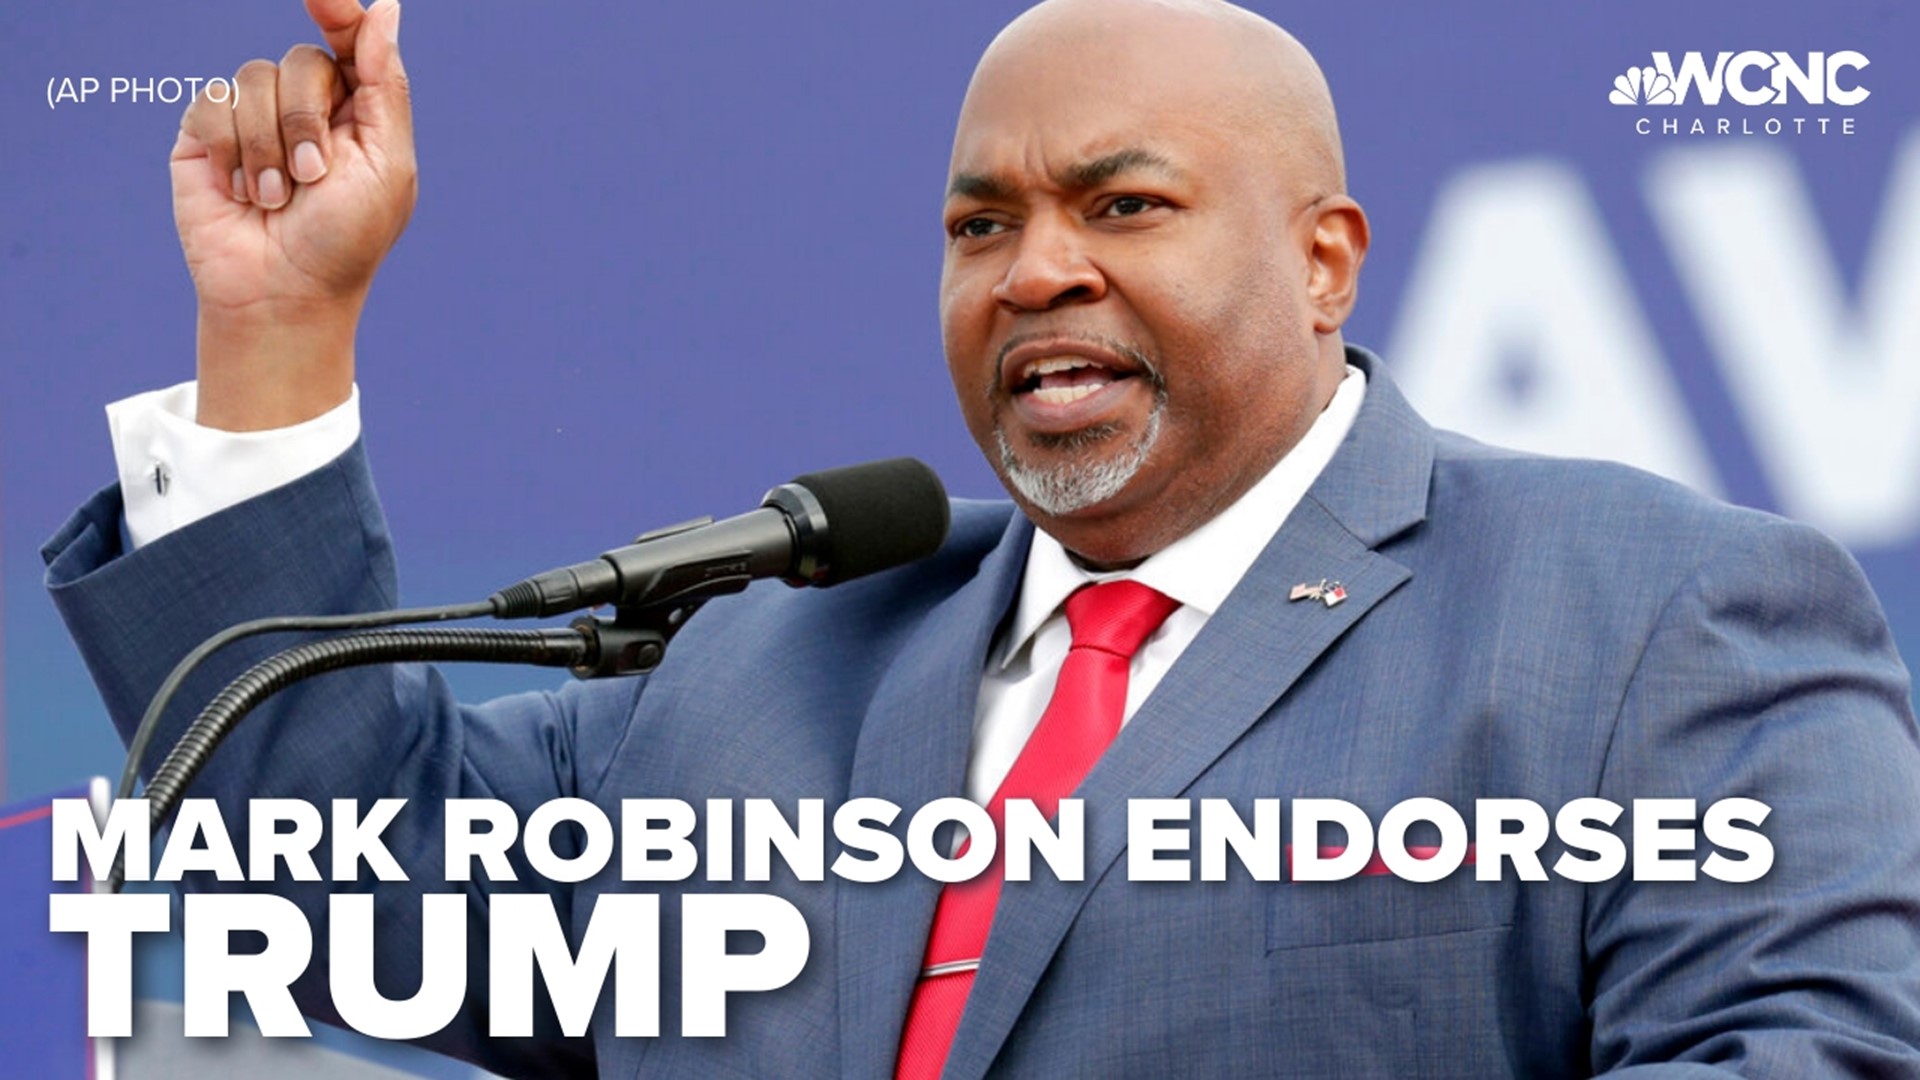 Lt. Gov. Mark Robinson endorsed the former president on Friday for the 2024 race.